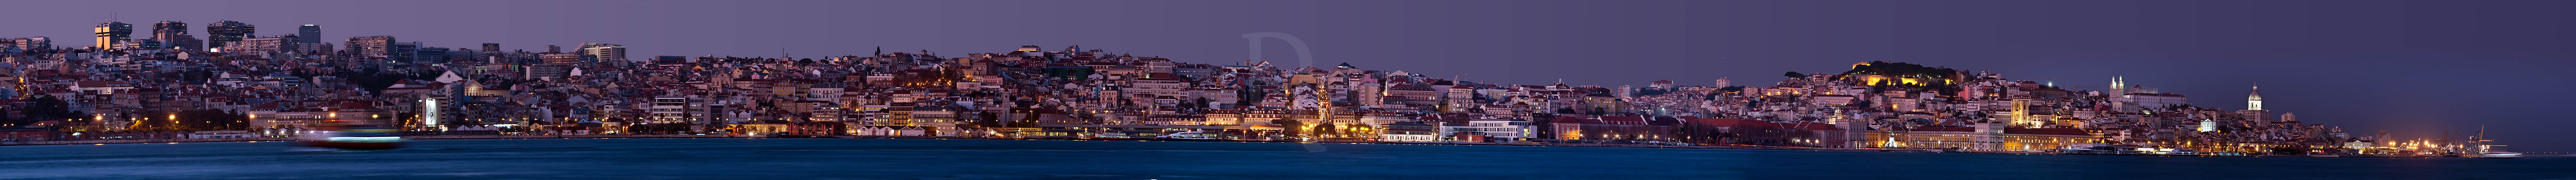 Lisboa Vista de Cacilhas